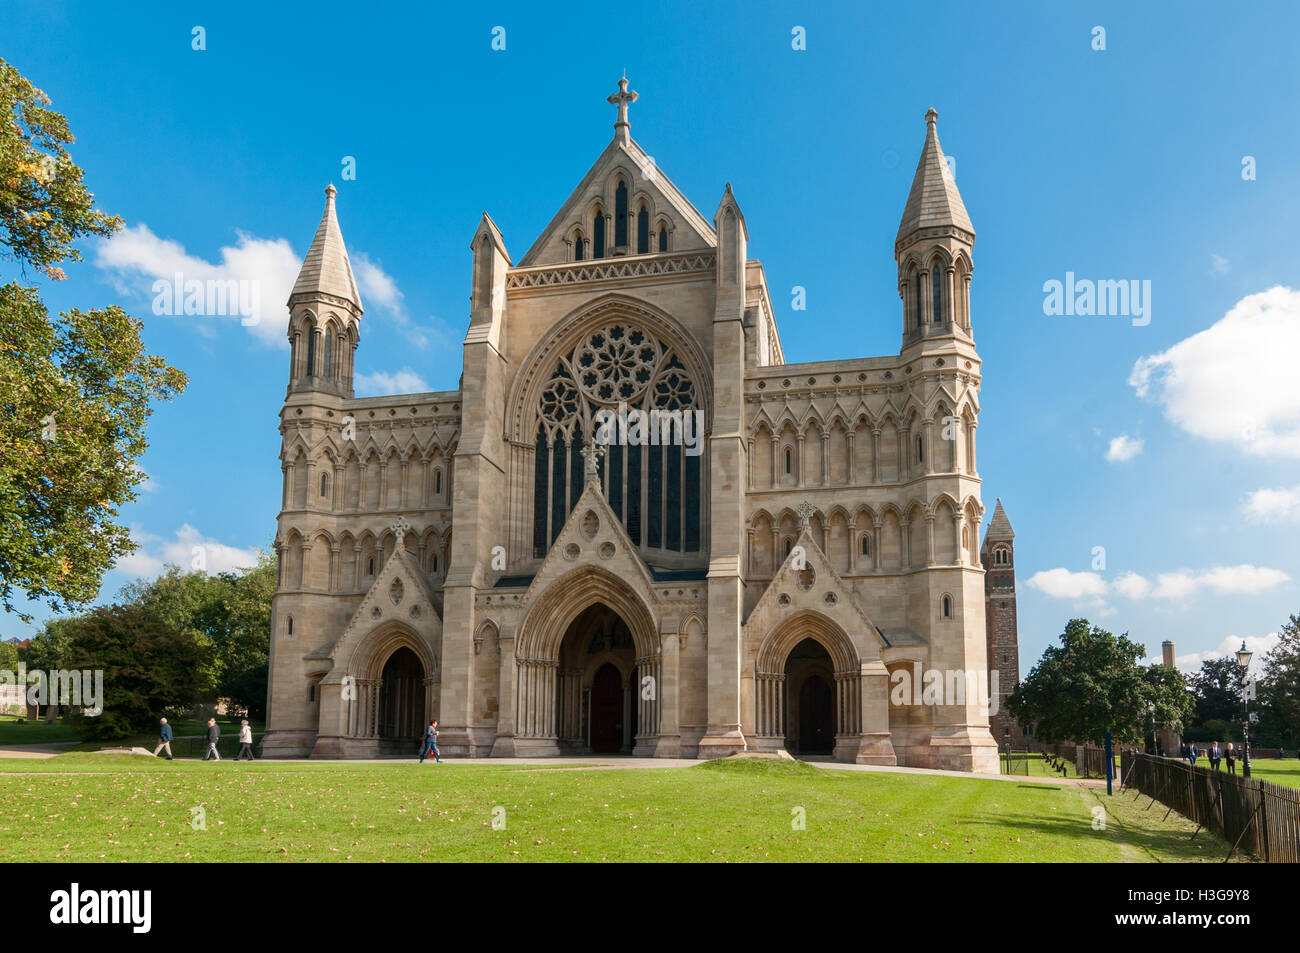 La Cathédrale de St Albans, Royaume-Uni Banque D'Images